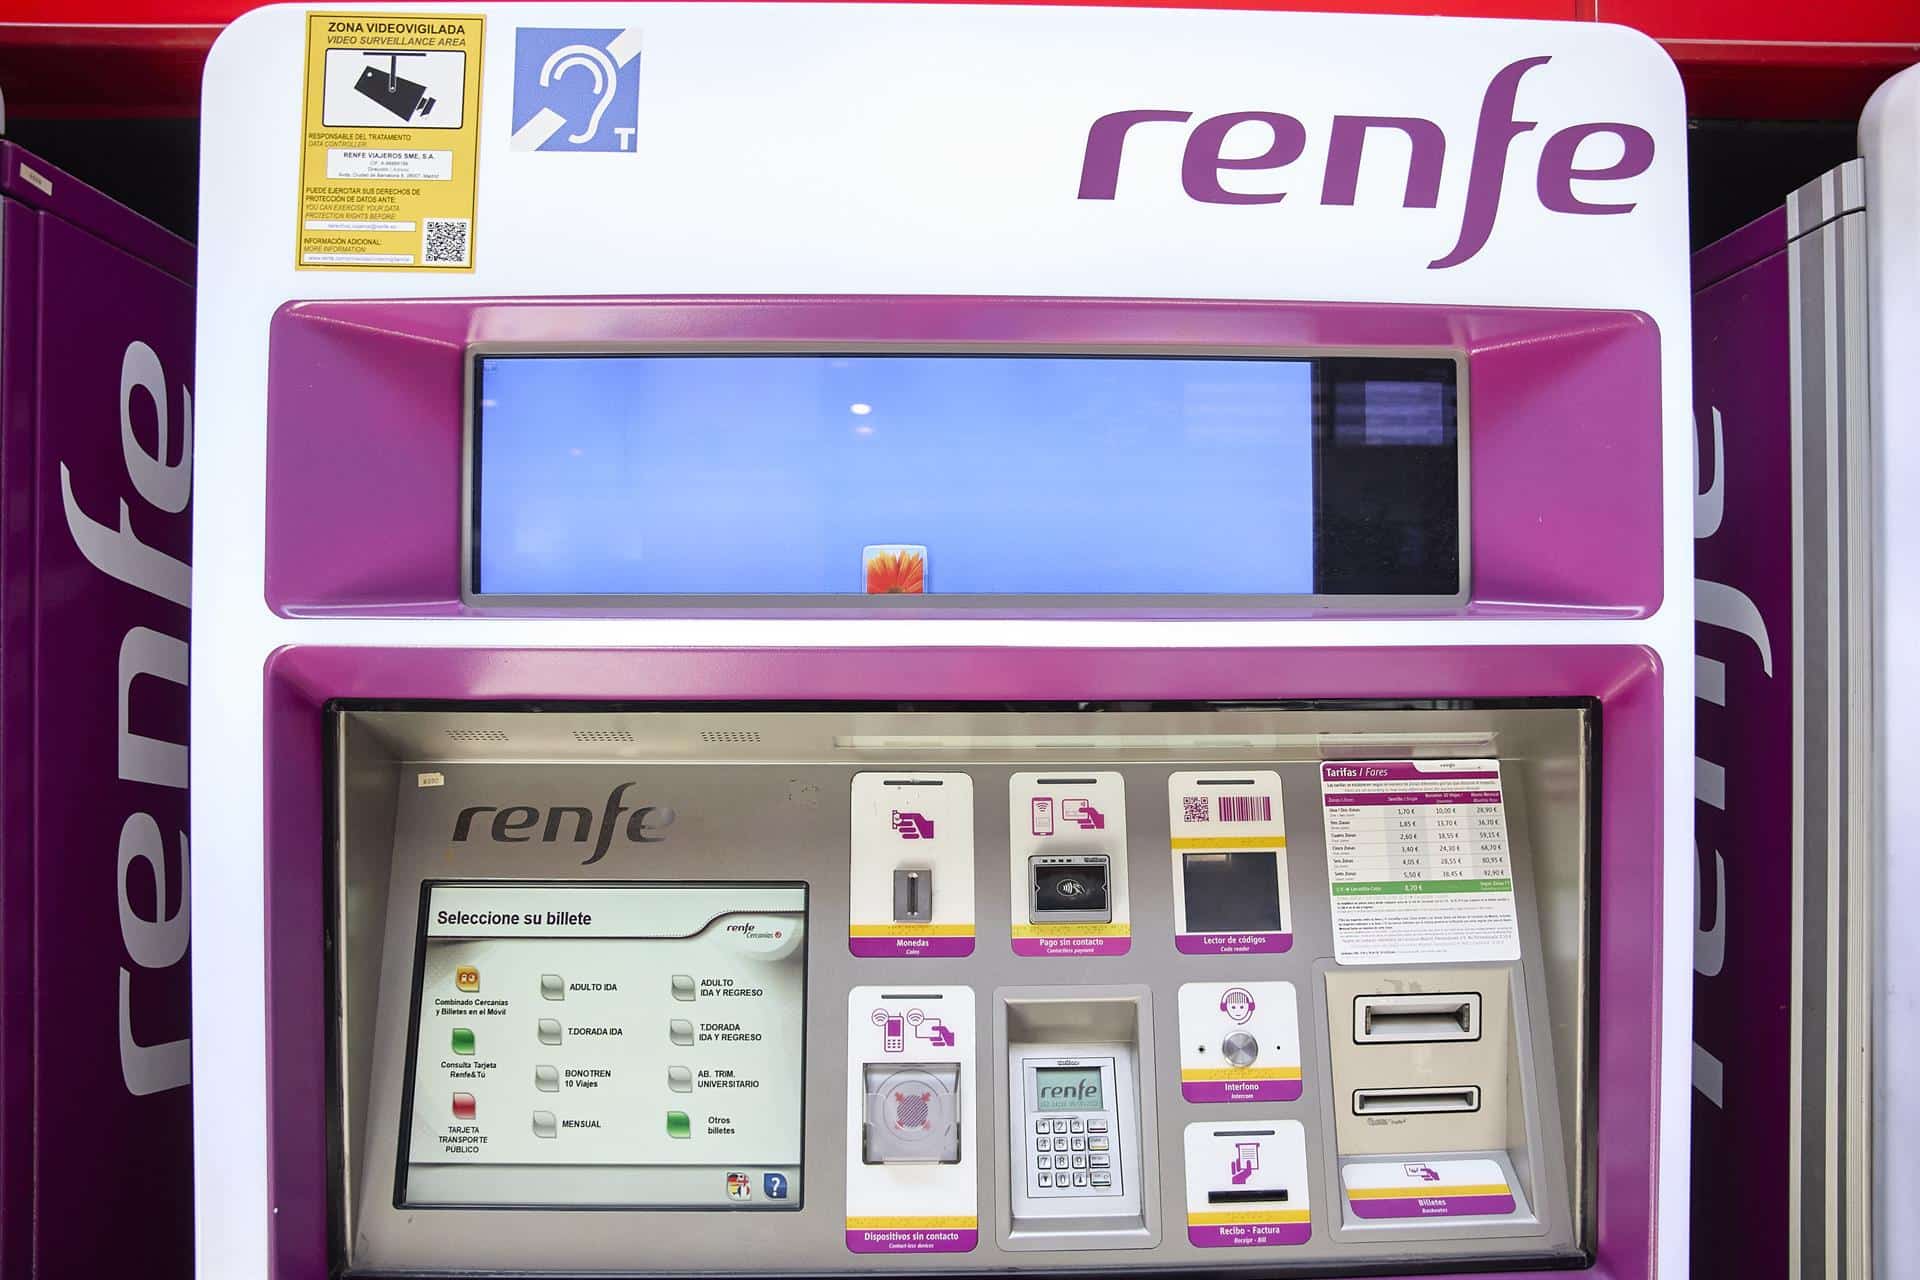 Los usuarios de Renfe podrán adquirir desde este miércoles los abonos gratuitos de Cercanías y Media Distancia